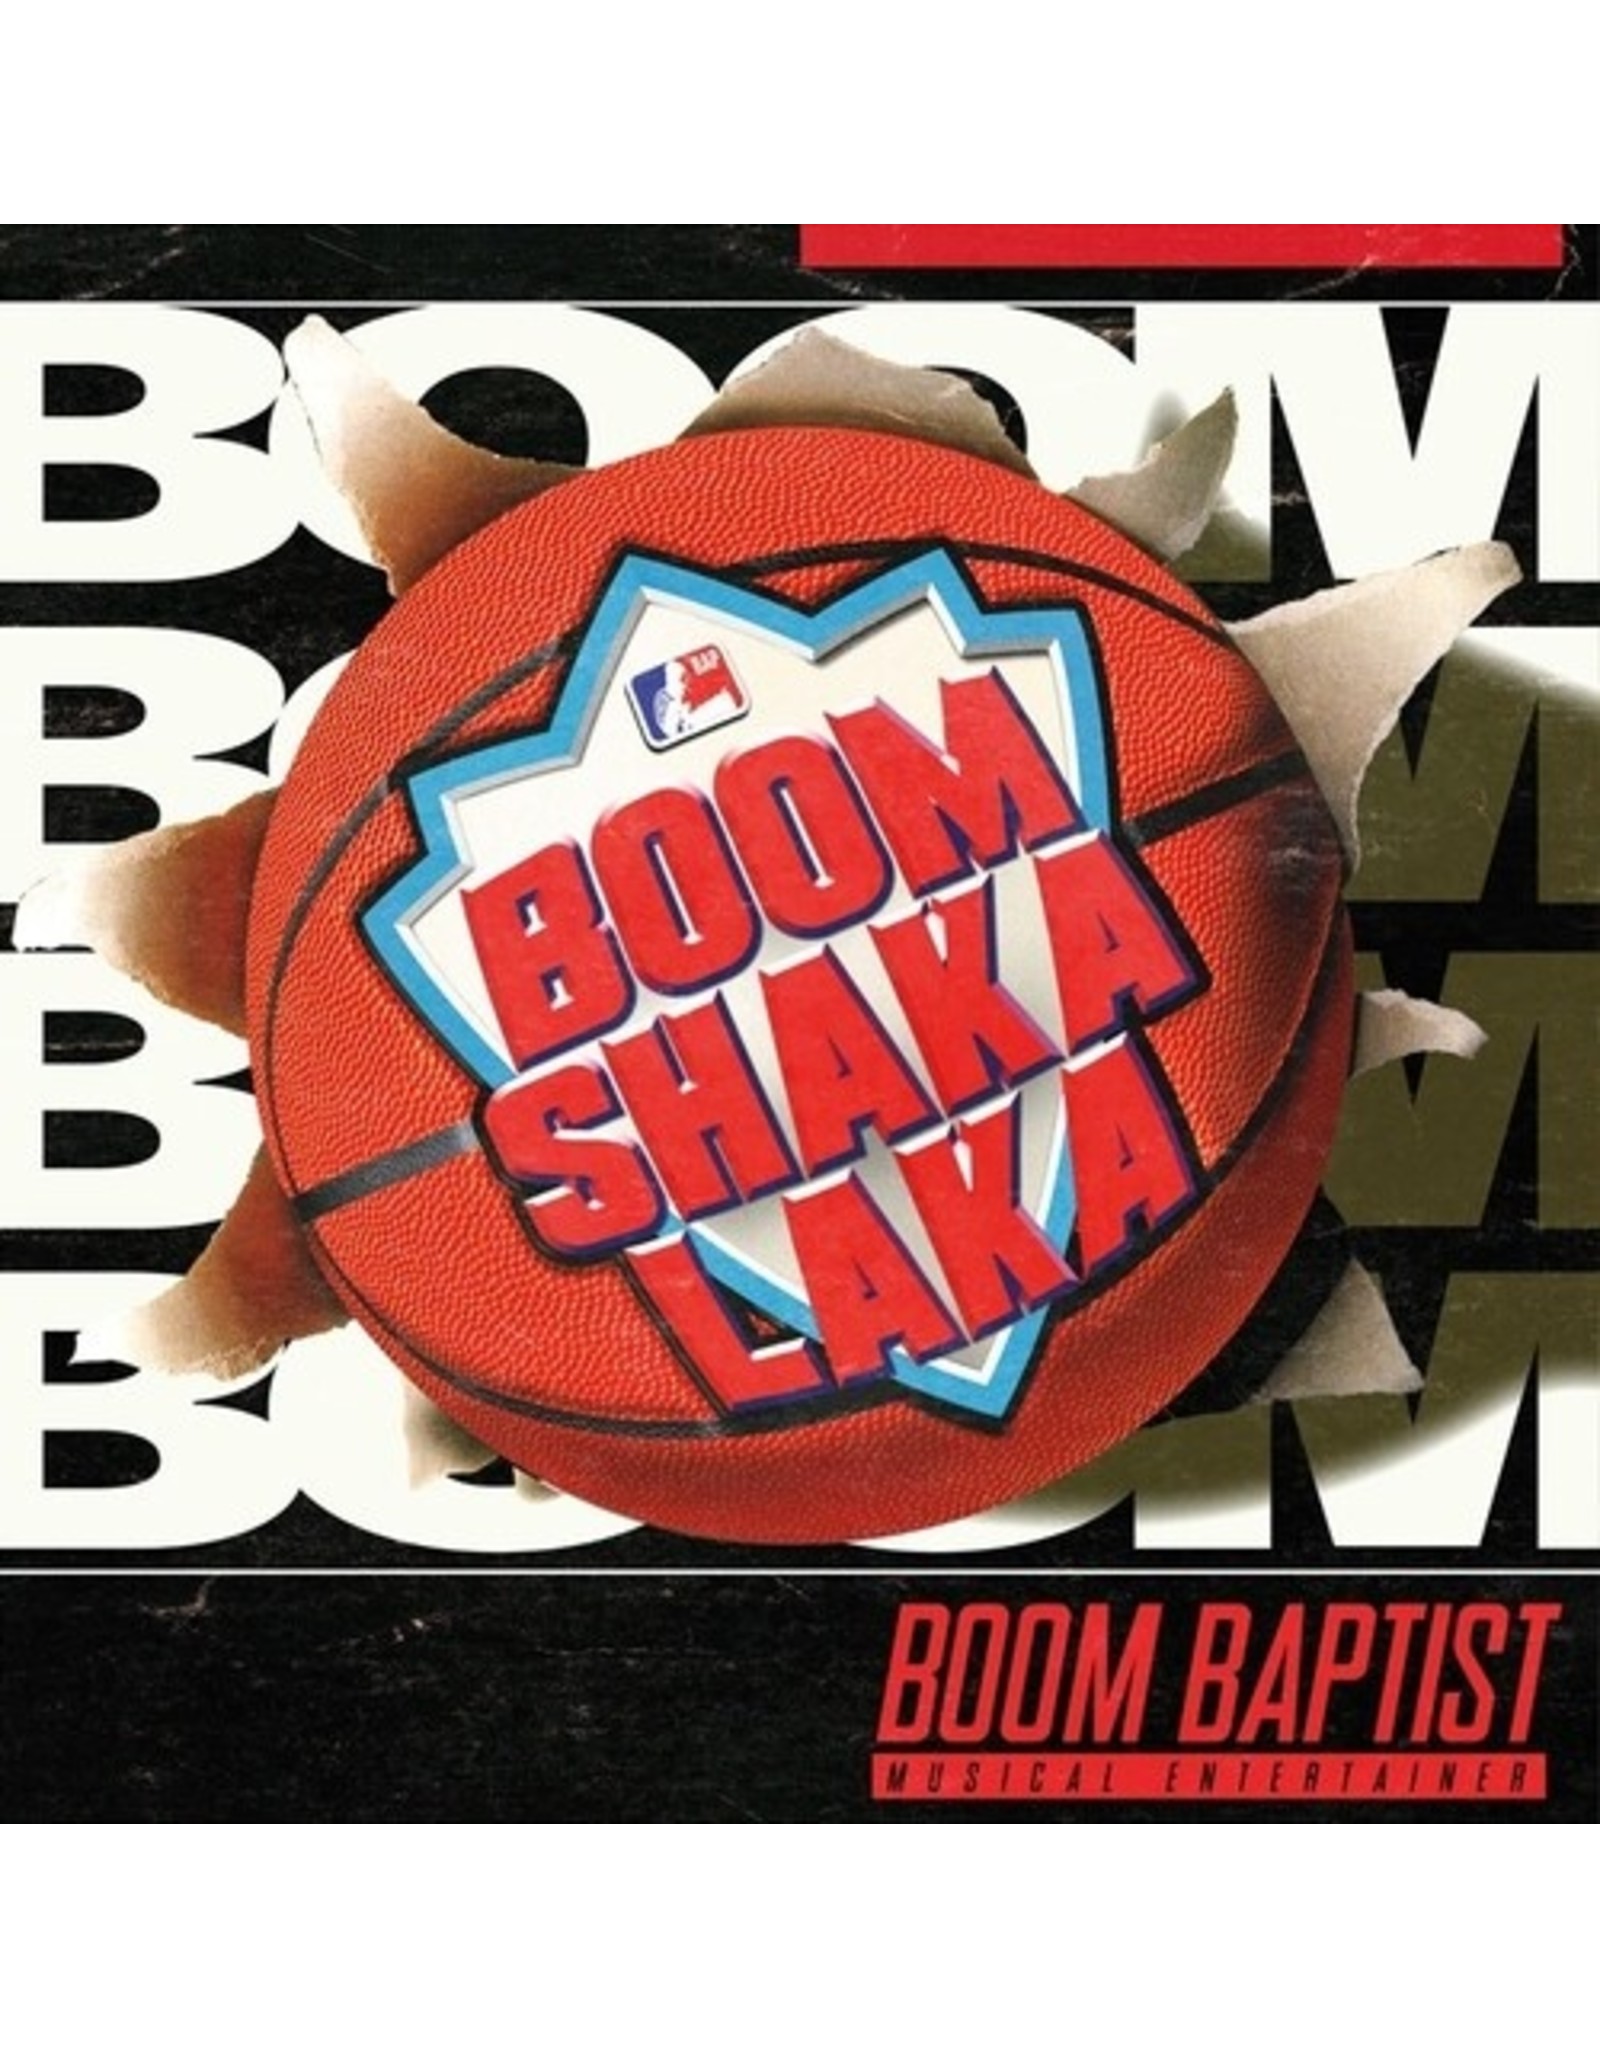 O.S.T. Boombaptist - Boomshakalaka ["He's On Fire!" Splatter Vinyl]